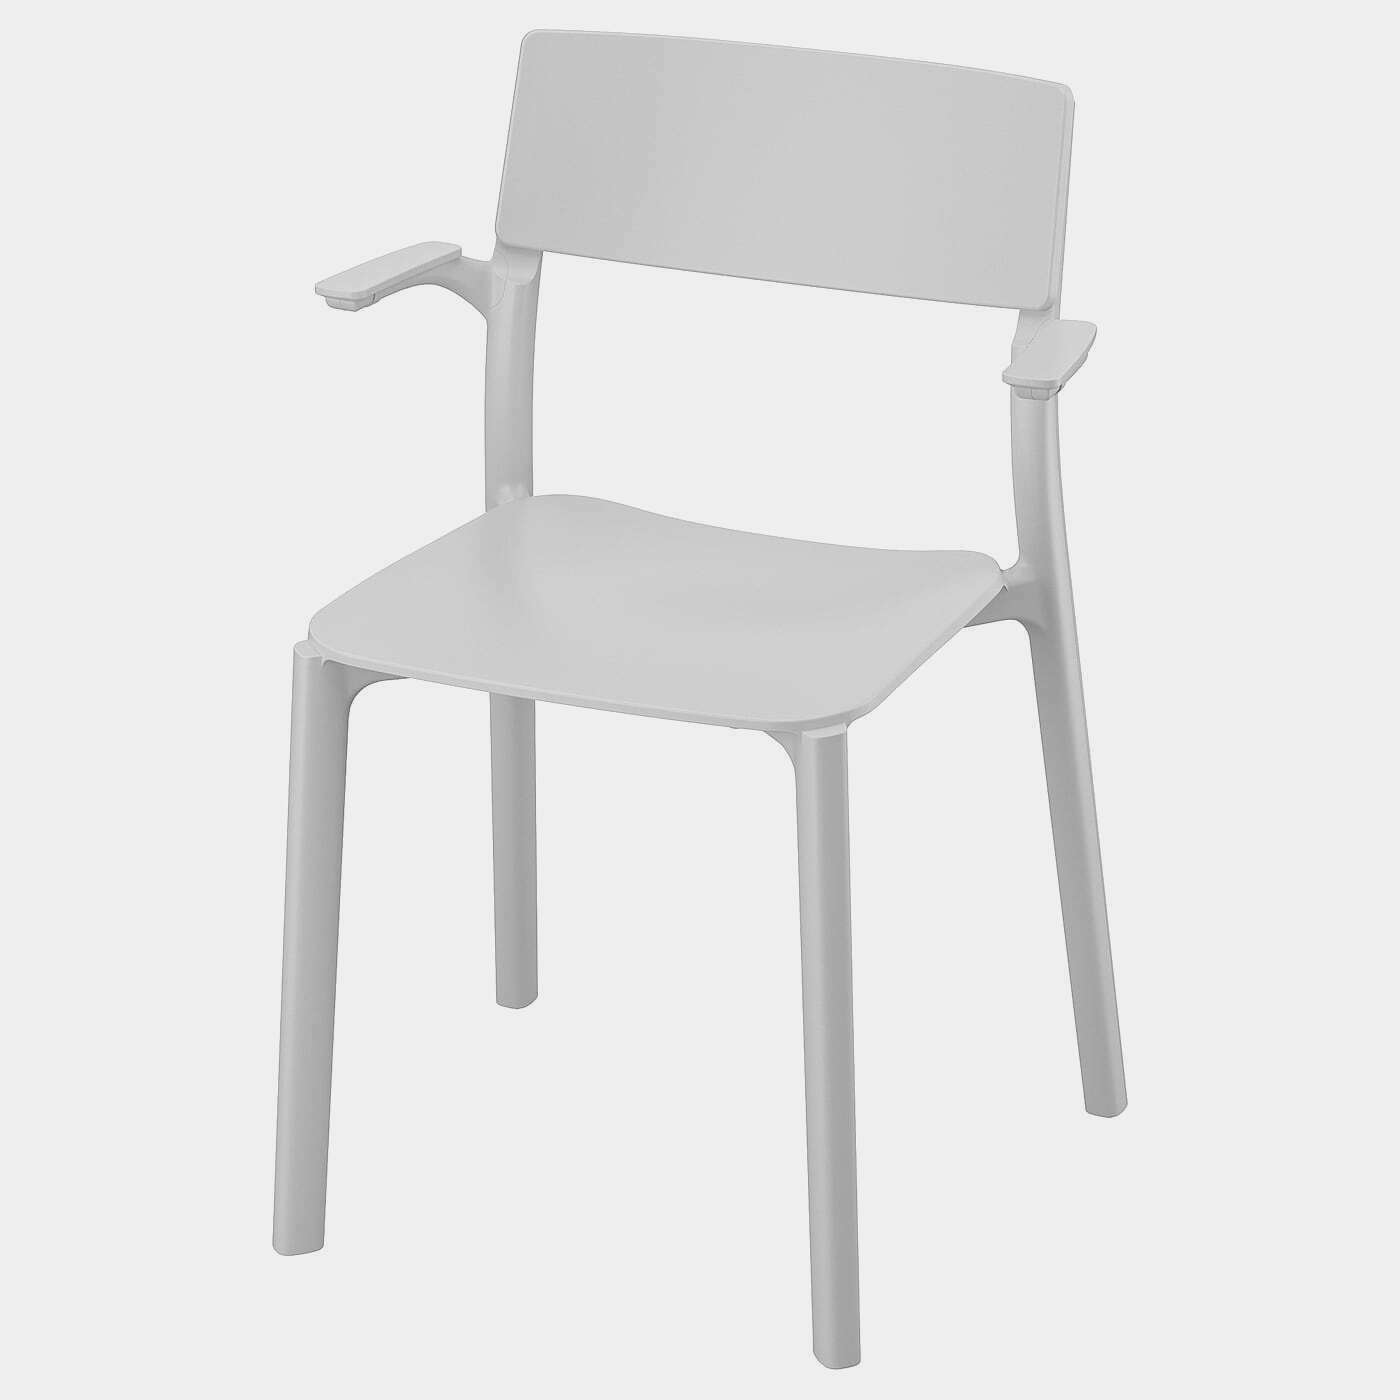 JANINGE Armlehnstuhl  - Esszimmerstühle - Möbel Ideen für dein Zuhause von Home Trends. Möbel Trends von Social Media Influencer für dein Skandi Zuhause.